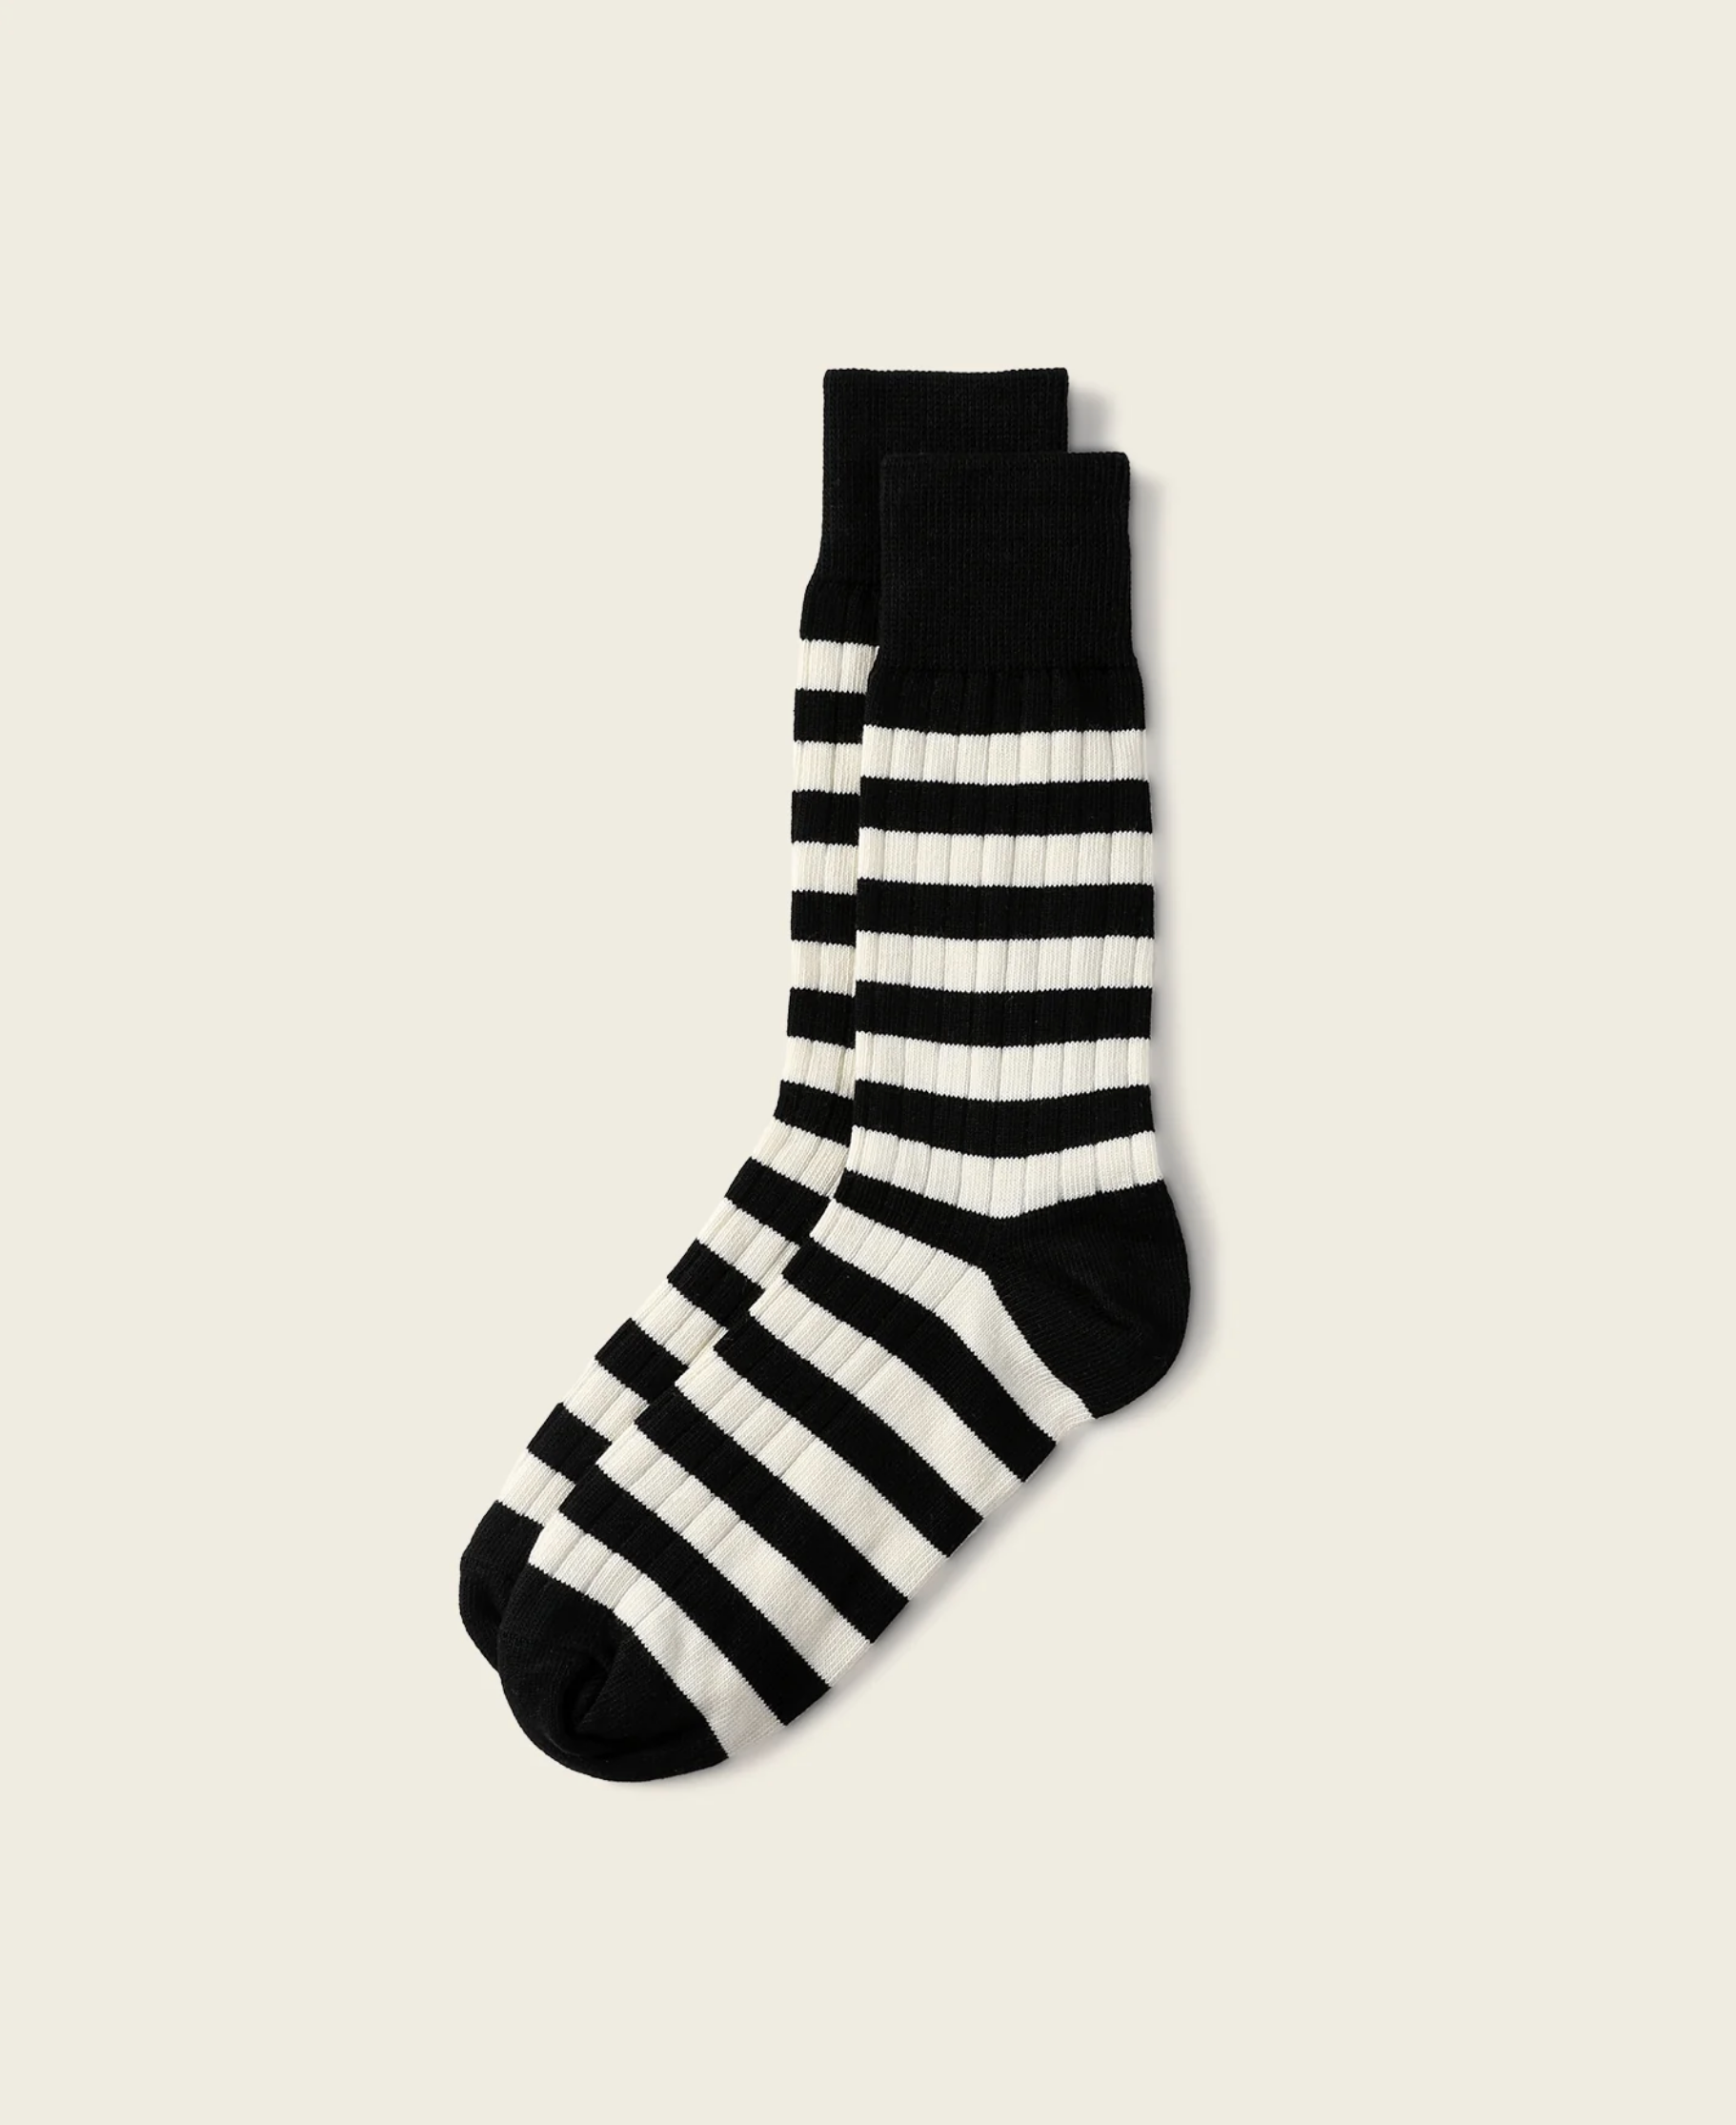 Retro Striped Cotton Socks